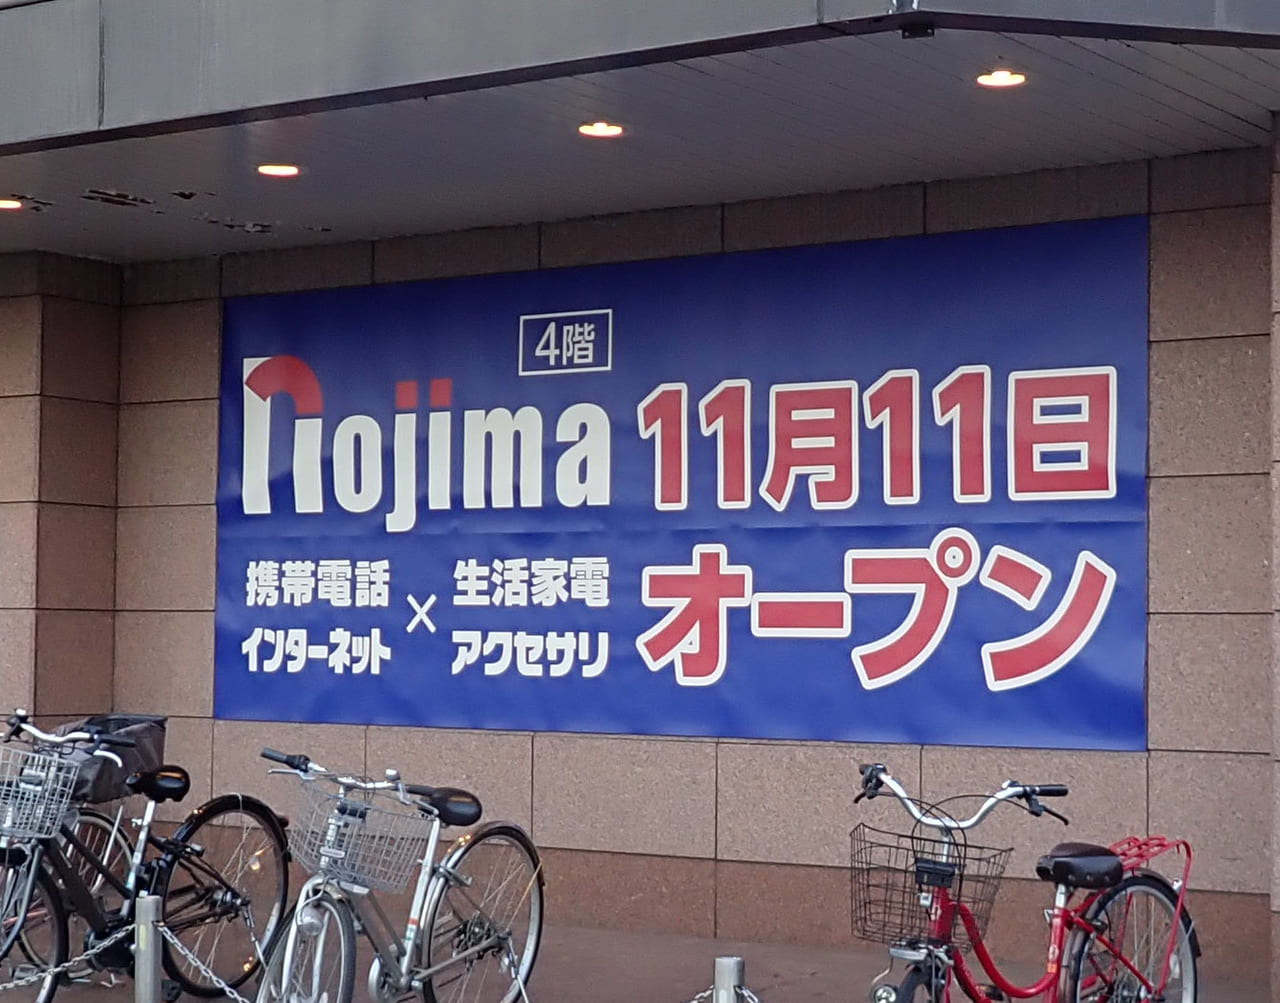 『丸広百貨店・川越店』内の『Nojima』のオープンの案内